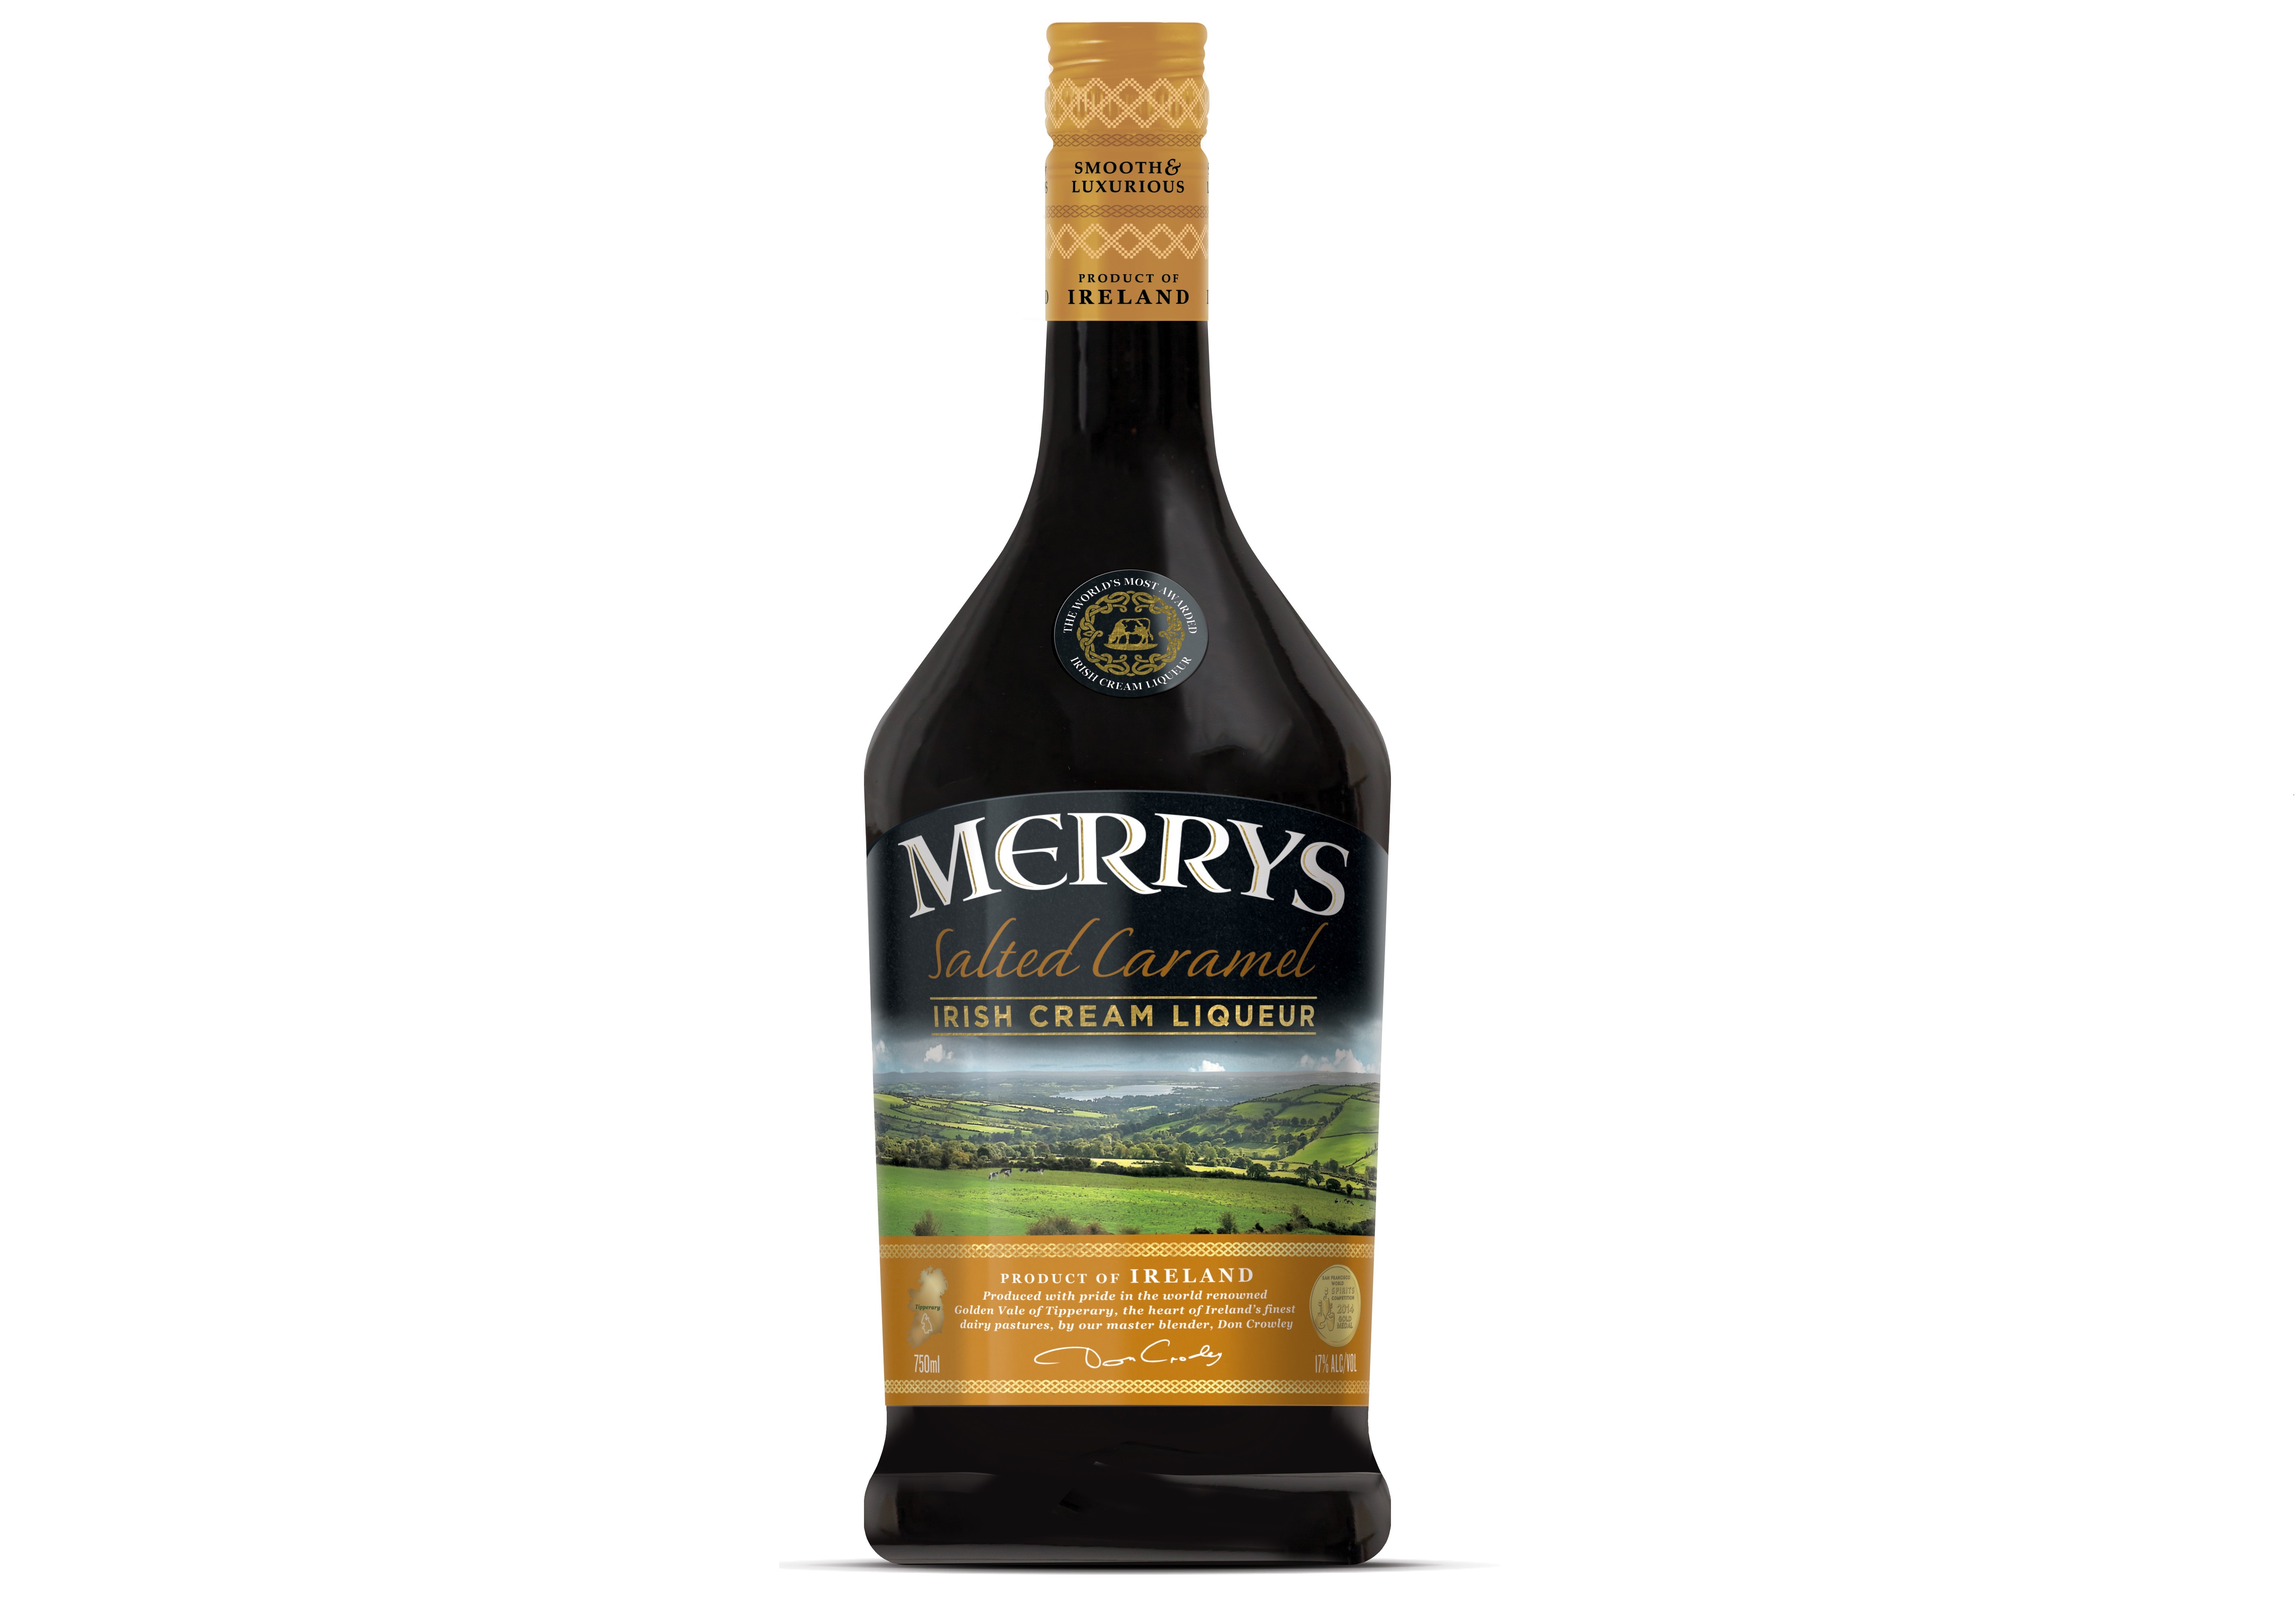 Merry's Salted Caramel Irish Cream Liqueur